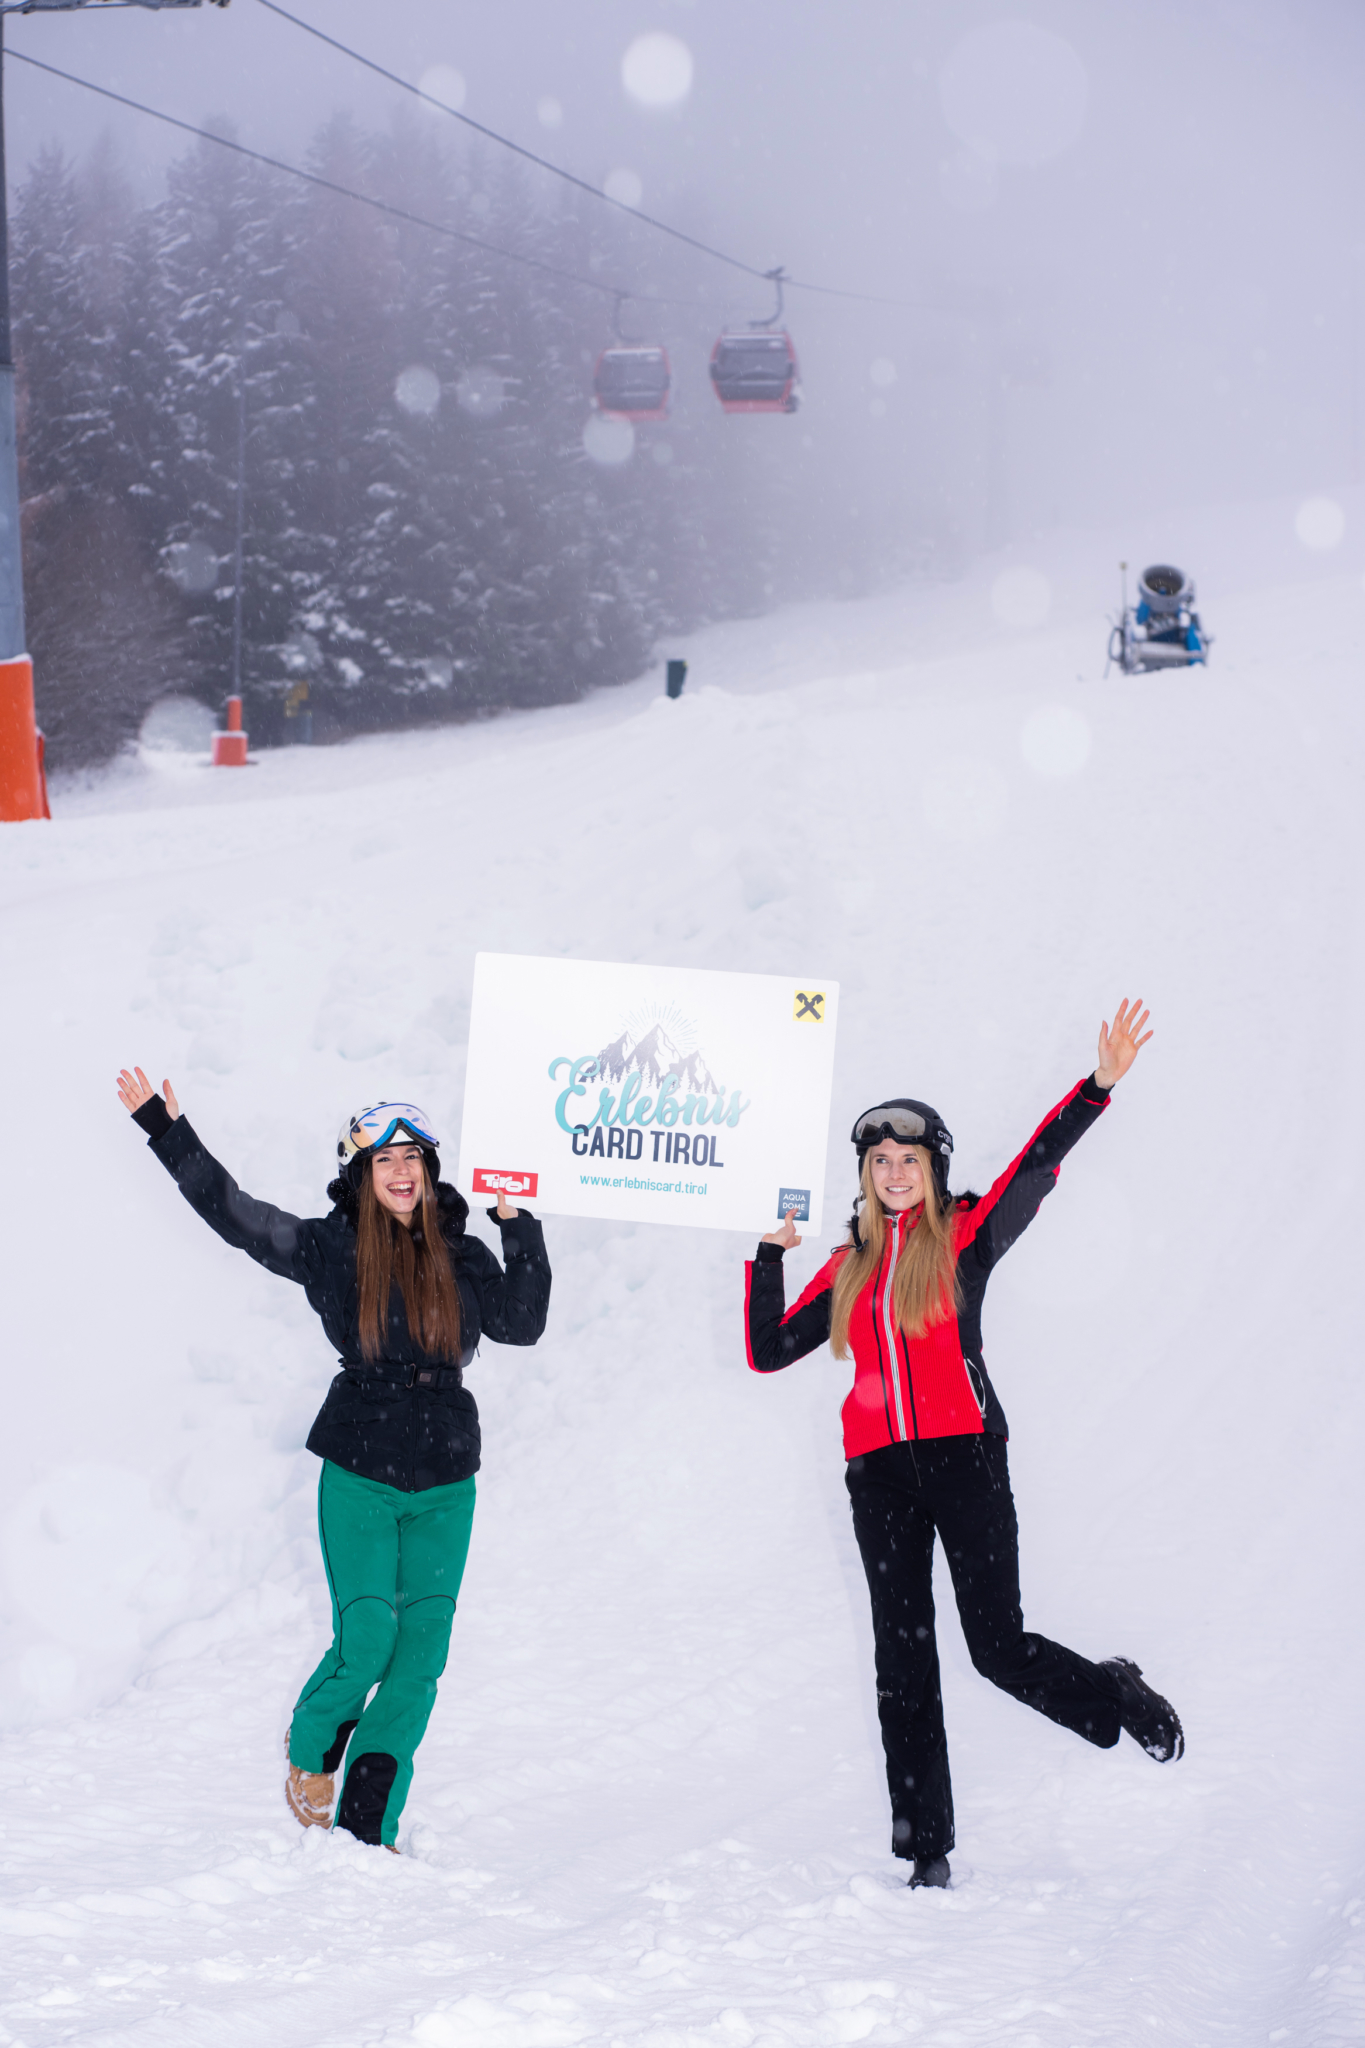 Riesige Freude bei allen, die die ErlebnisCard Tirol haben – sie gilt beim Skifahren genauso wie im Metropol-Kino Innsbruck oder bei sechs McDonald’s Restaurants in Innsbruck.